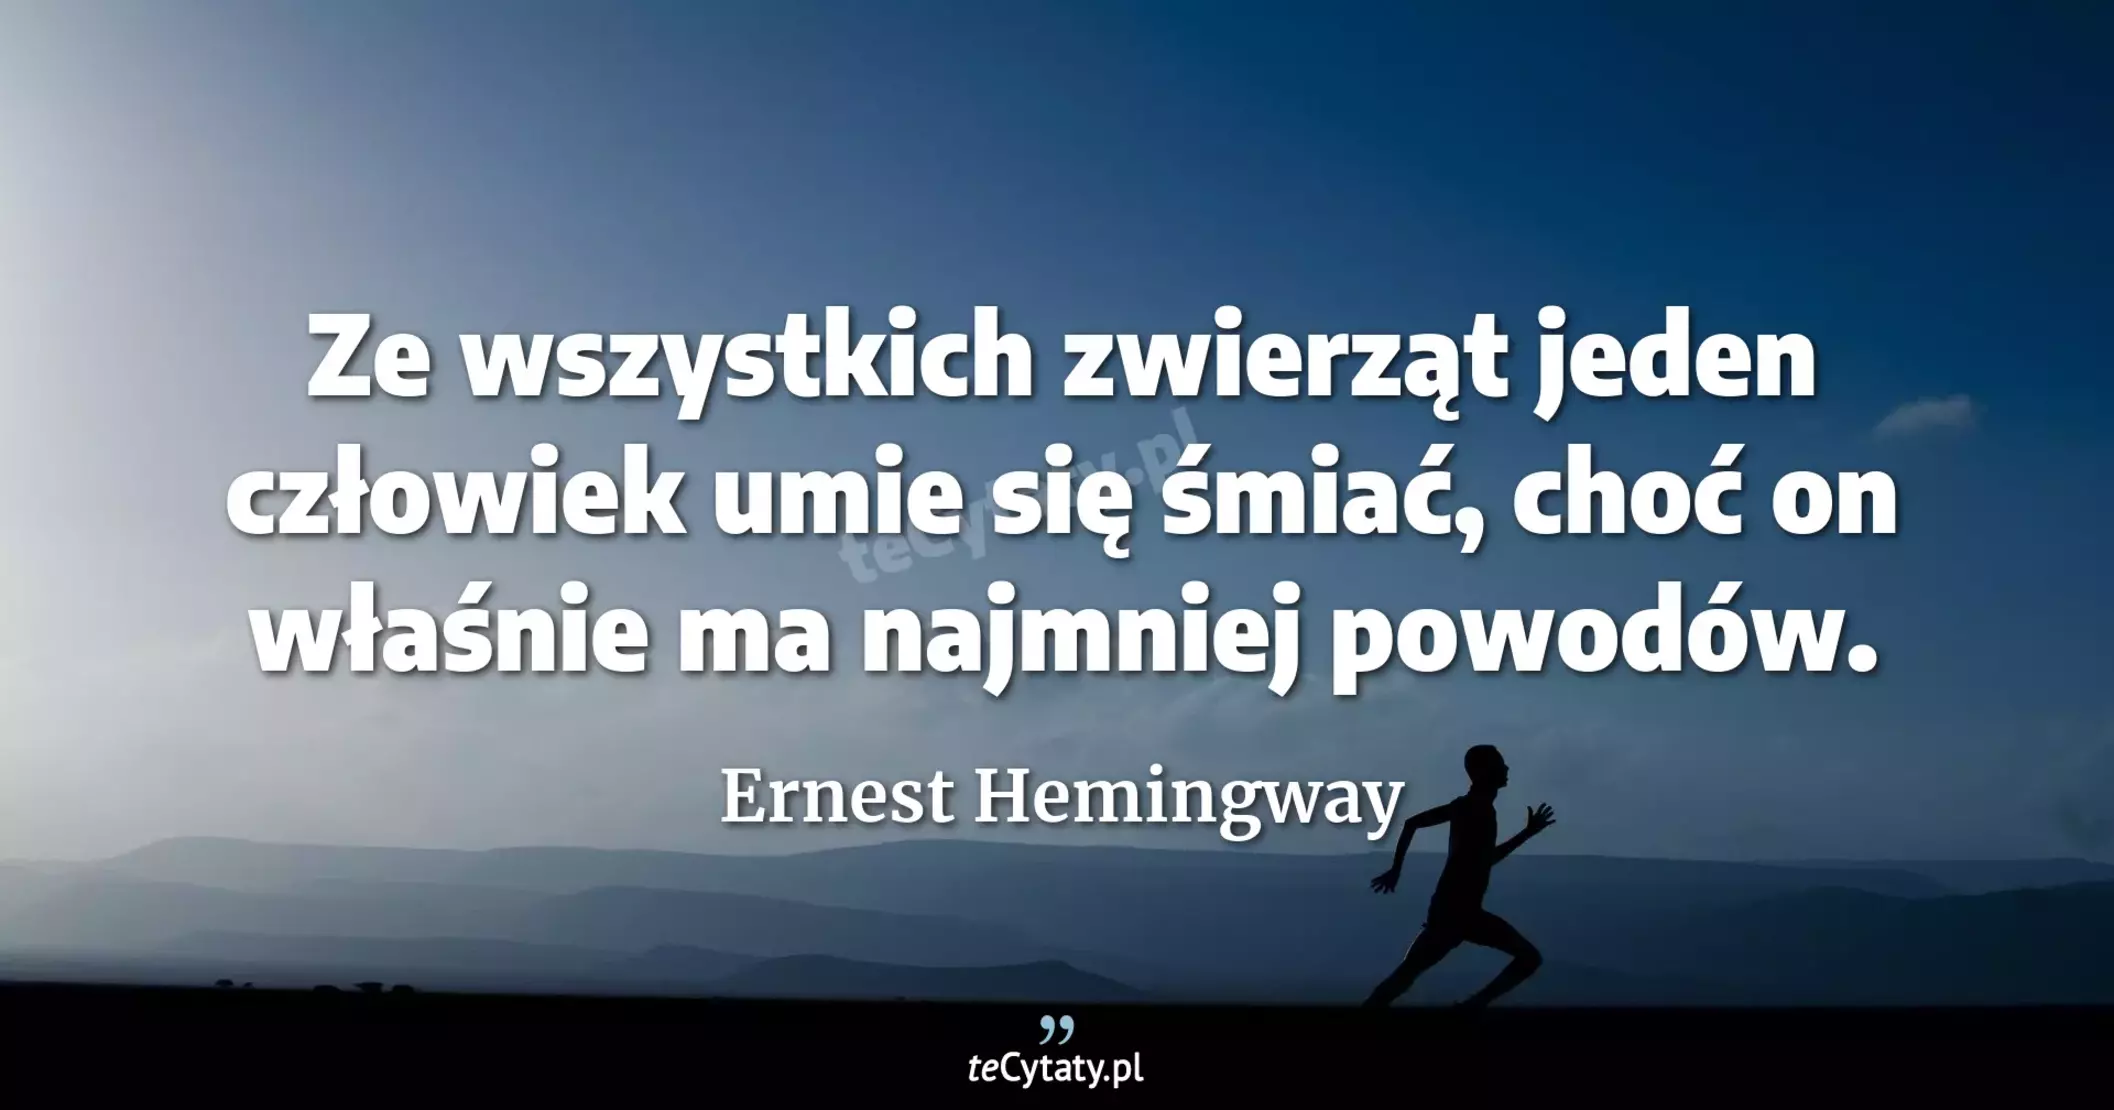 Ze wszystkich zwierząt jeden człowiek umie się śmiać, choć on właśnie ma najmniej powodów. - Ernest Hemingway